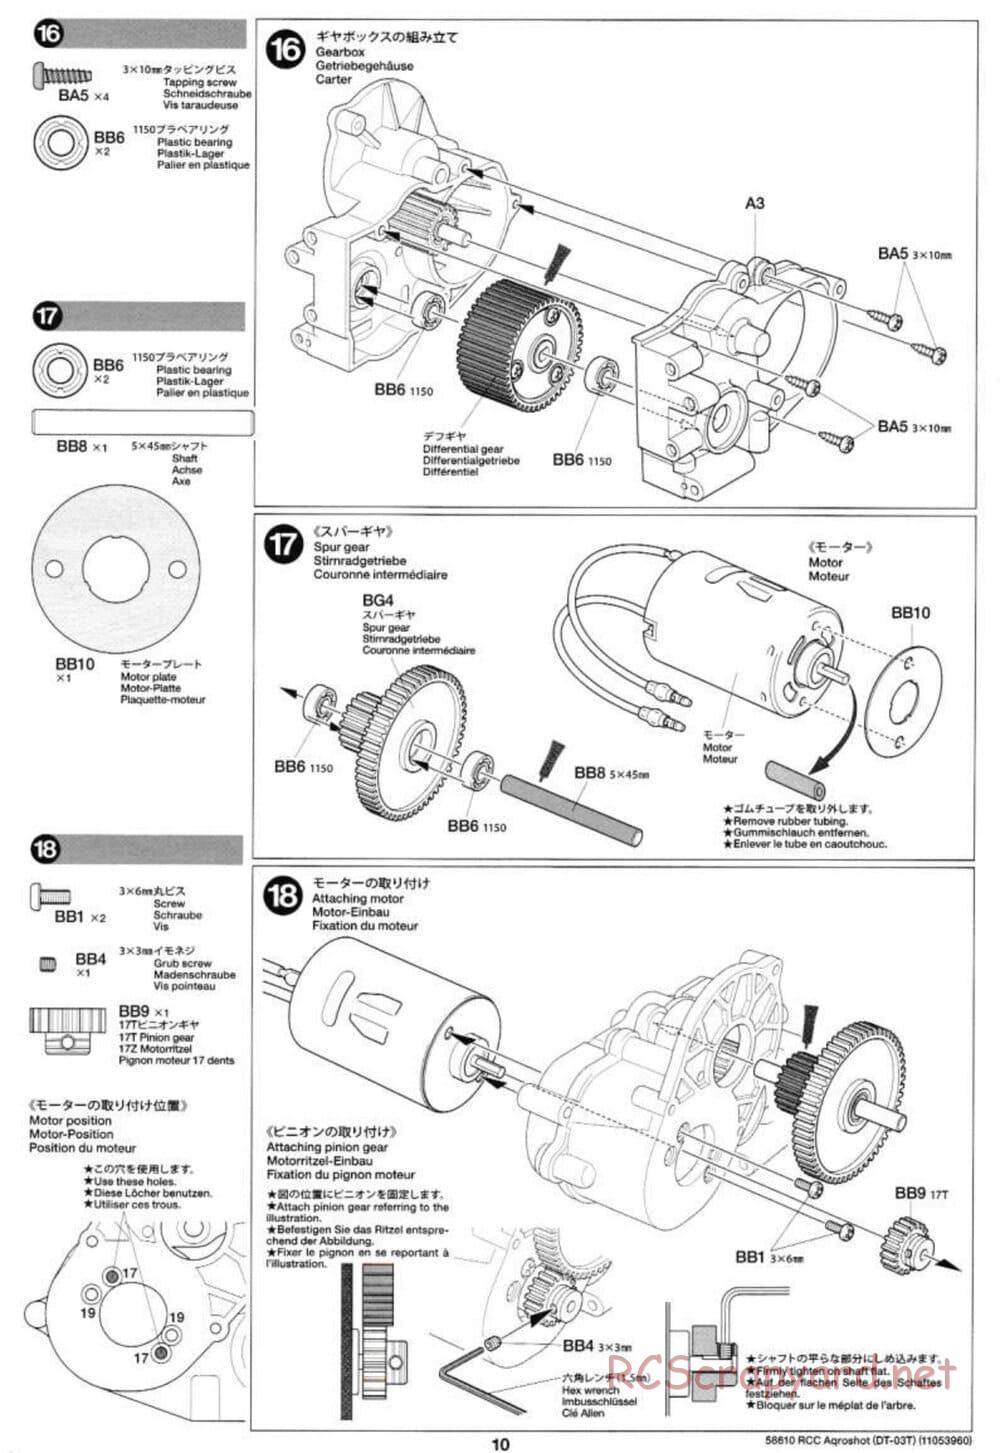 Tamiya - Aqroshot Chassis - Manual - Page 10